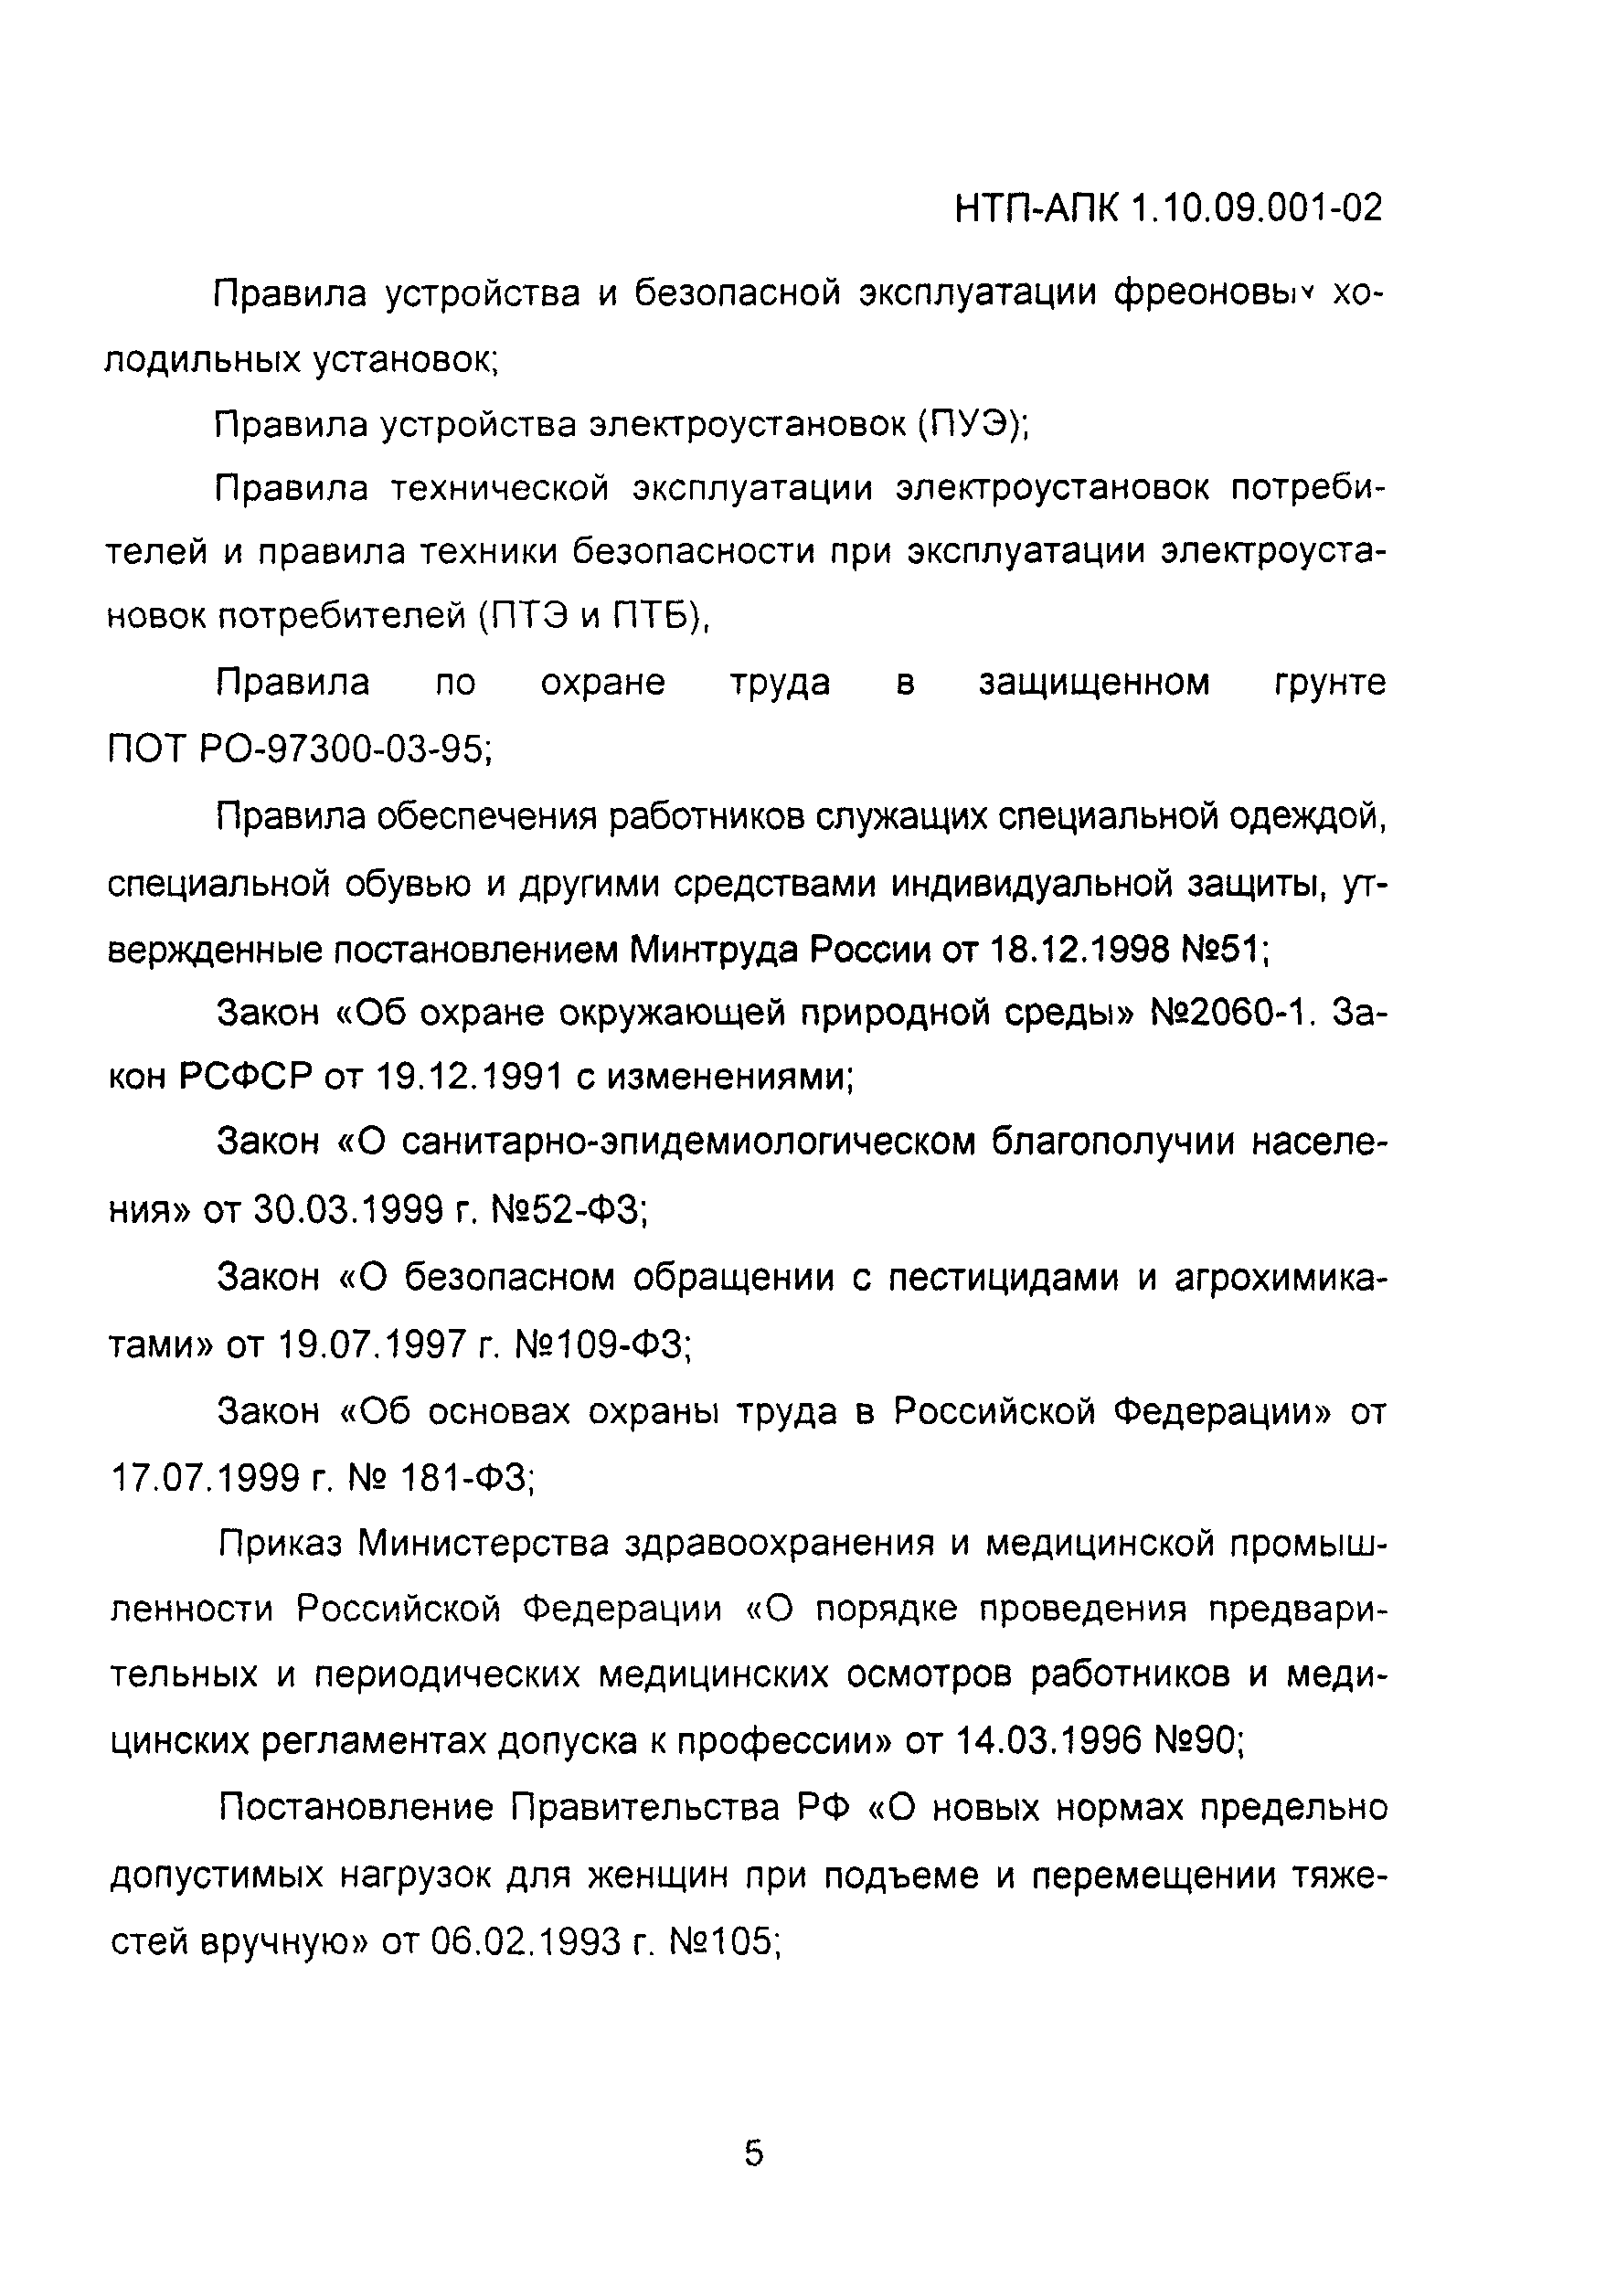 НТП АПК 1.10.09.001-02